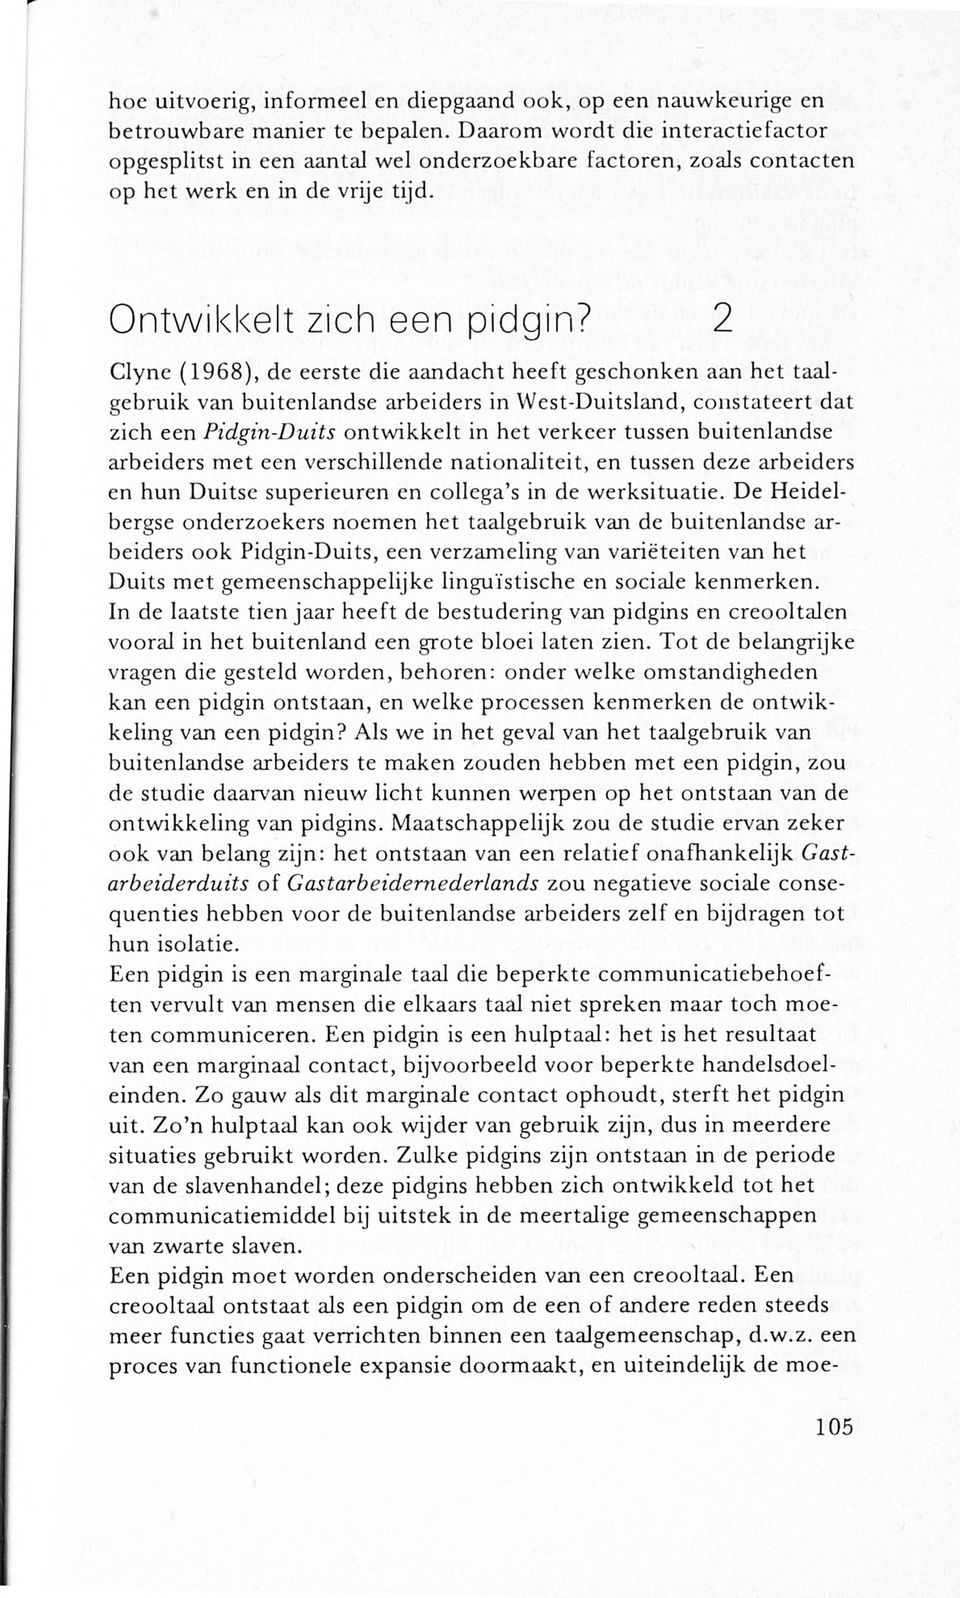 2 Clyne (1968), de eerste die aandacht heeft geschonken aan het taalgebruik van buitenlandse arbeiders in YVest-Duitsland, constateert dat zich een Pidgin-Duits ontwikkelt in het verkeer tussen